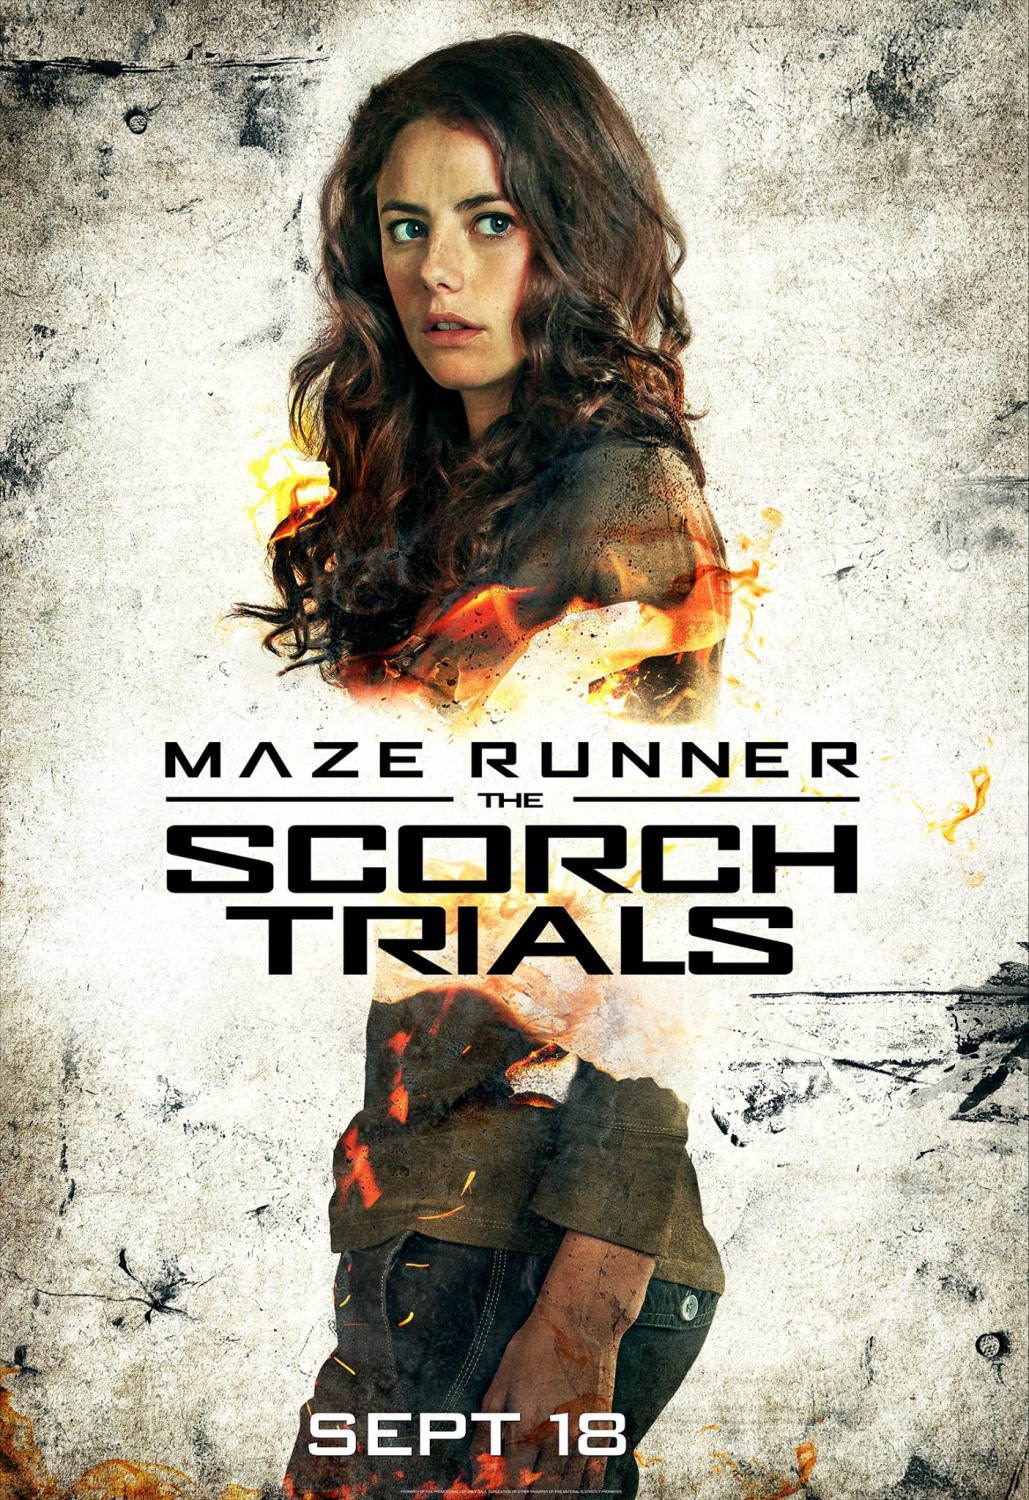 maze runner scorch trials